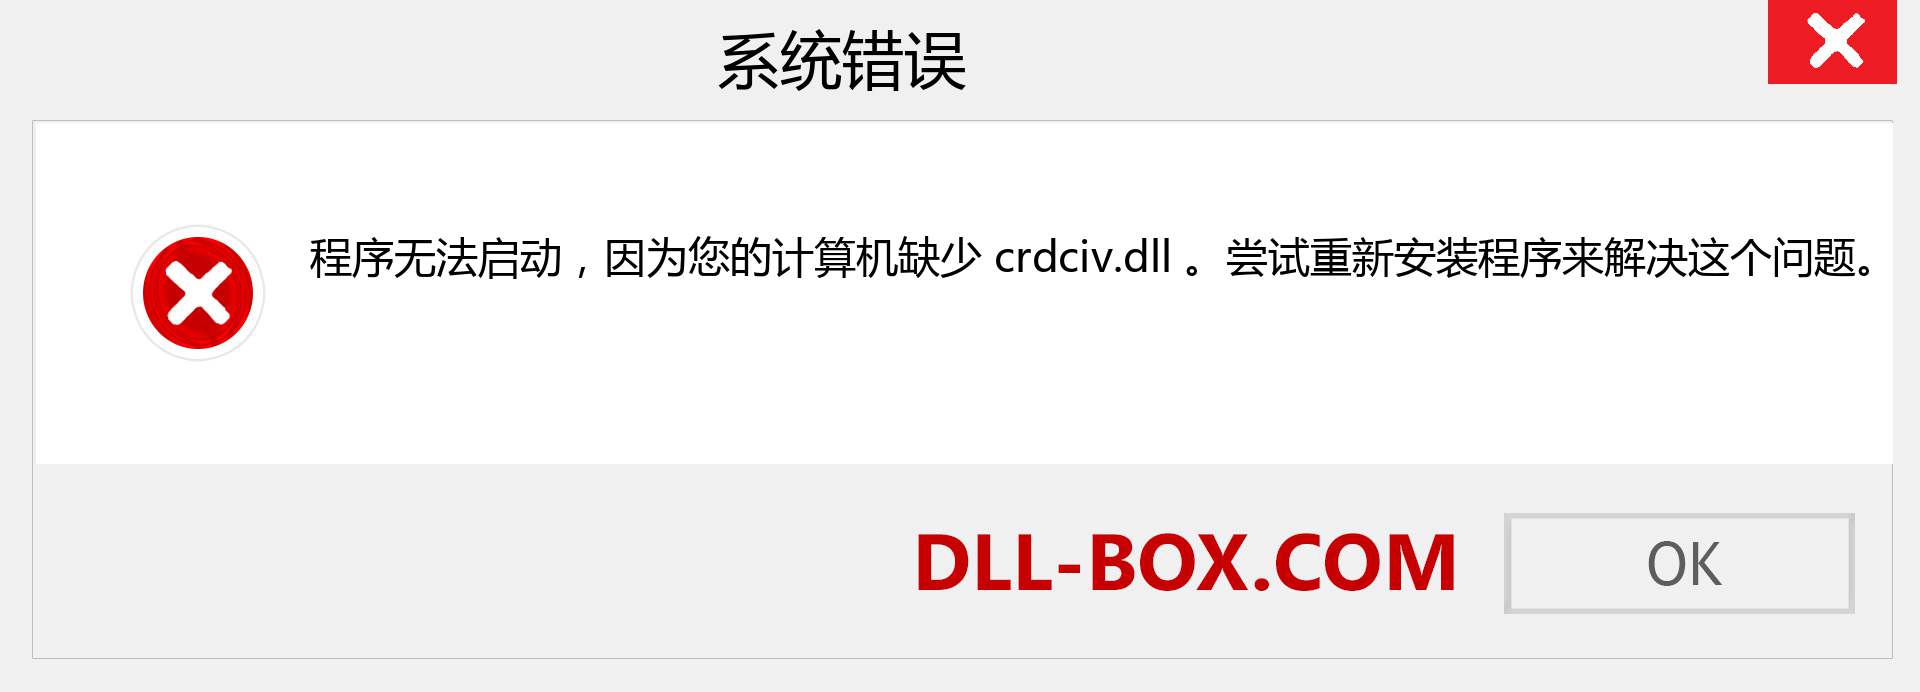 crdciv.dll 文件丢失？。 适用于 Windows 7、8、10 的下载 - 修复 Windows、照片、图像上的 crdciv dll 丢失错误